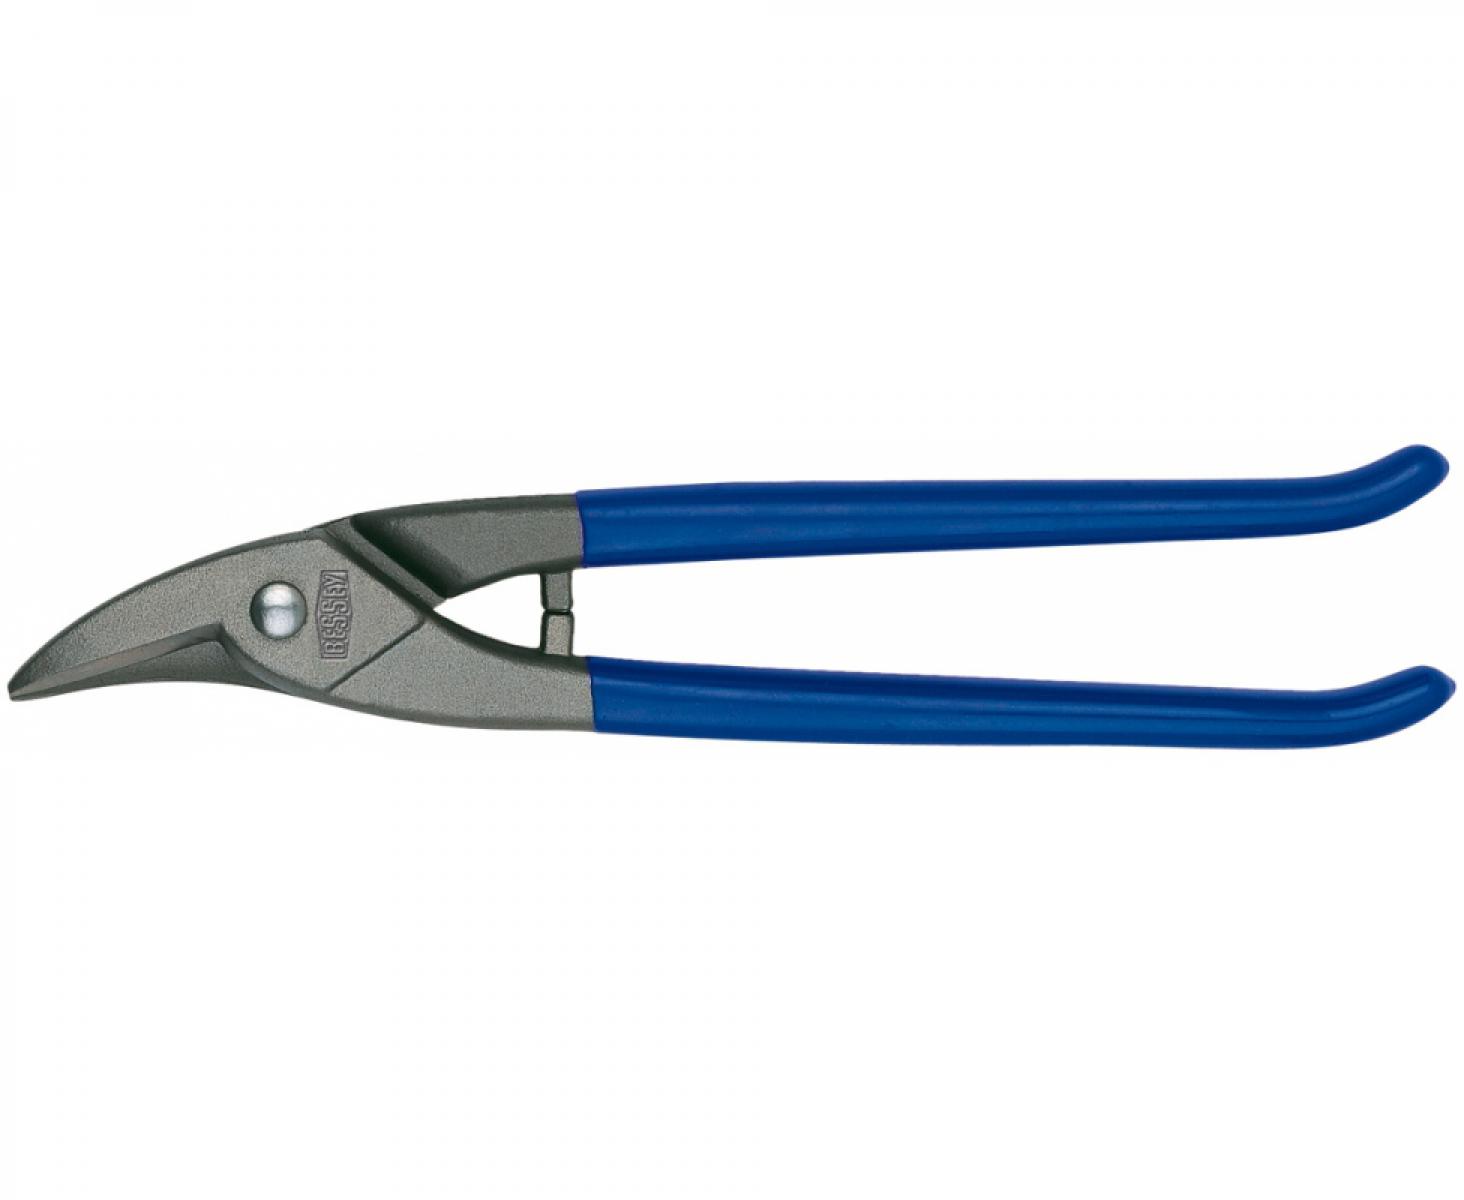 Фигурные обычные ножницы для отверстий Erdi ER-D214-275 праворежущие